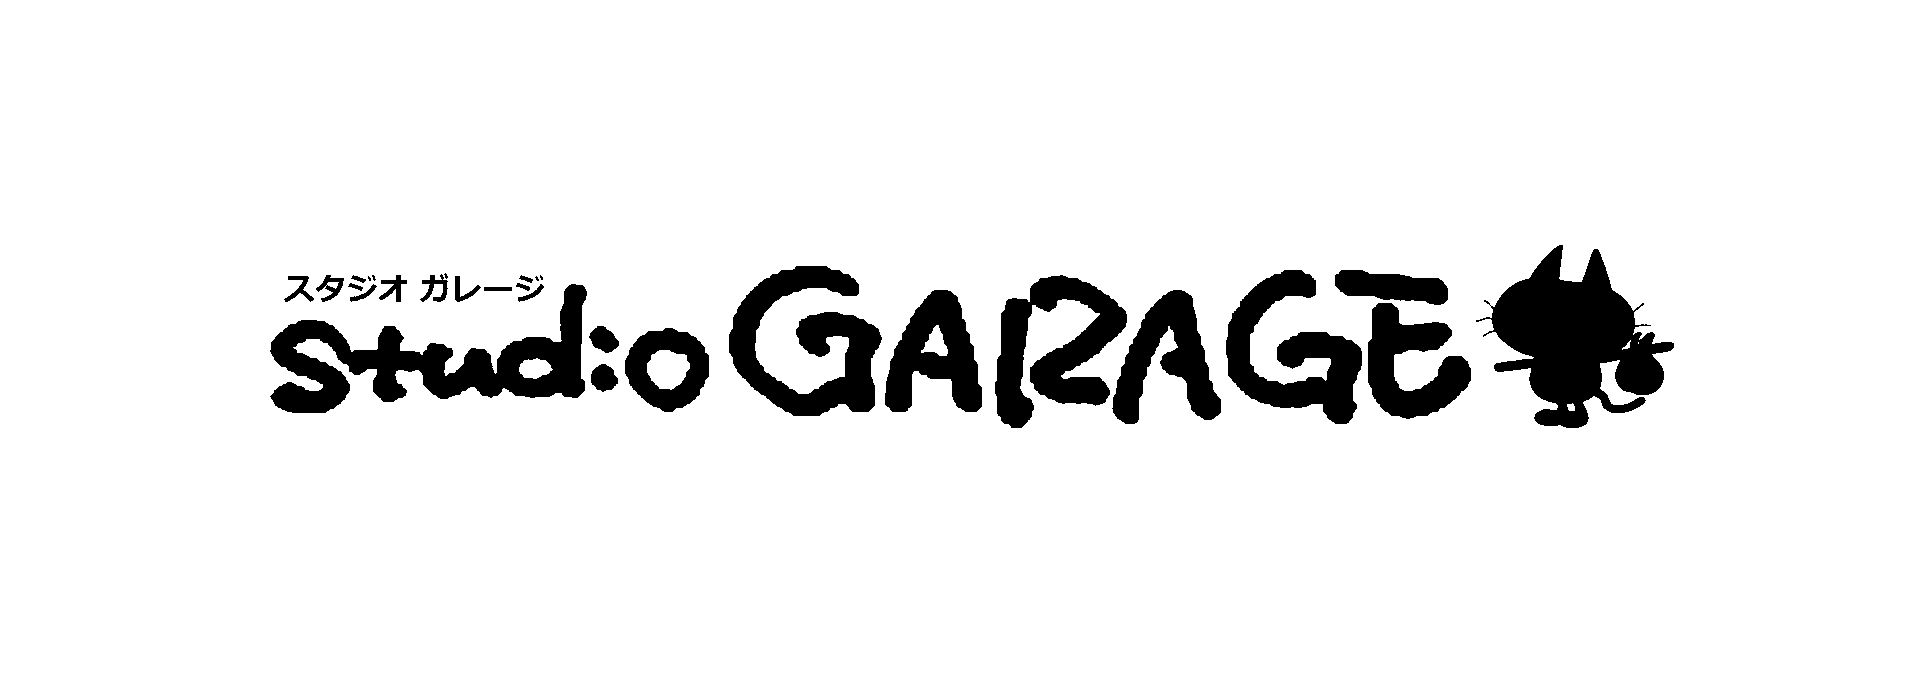 スタジオGARAGE 公式サイト